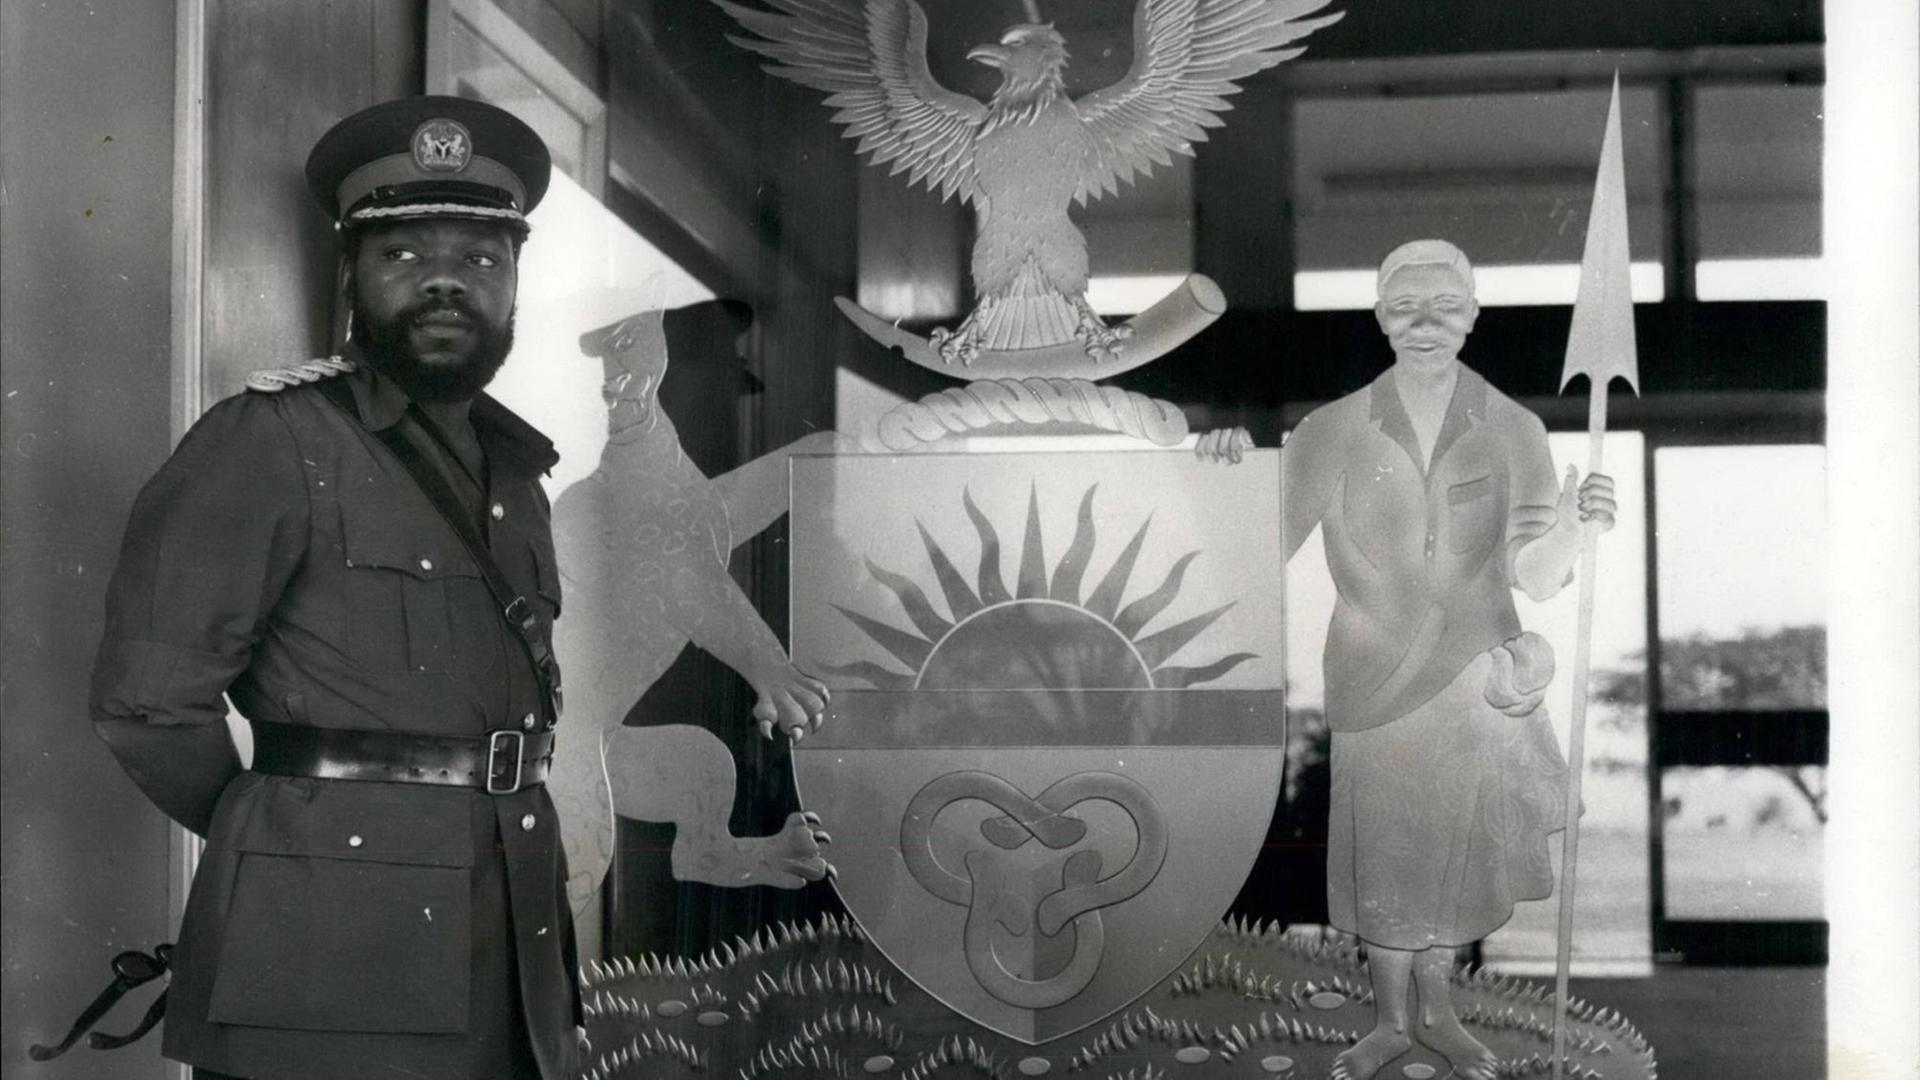 Ein historisches Schwarz-Weiß-Foto. Zu sehen ist links ein afrikanischer Mann mit Vollbart und in Militäruniform. Er steht vor dem Symbol des damaligen Staates Biafra im Südosten von Nigeria. Das Symbol zeigt unter anderem einen Adler und eine aufgehende Sonne.